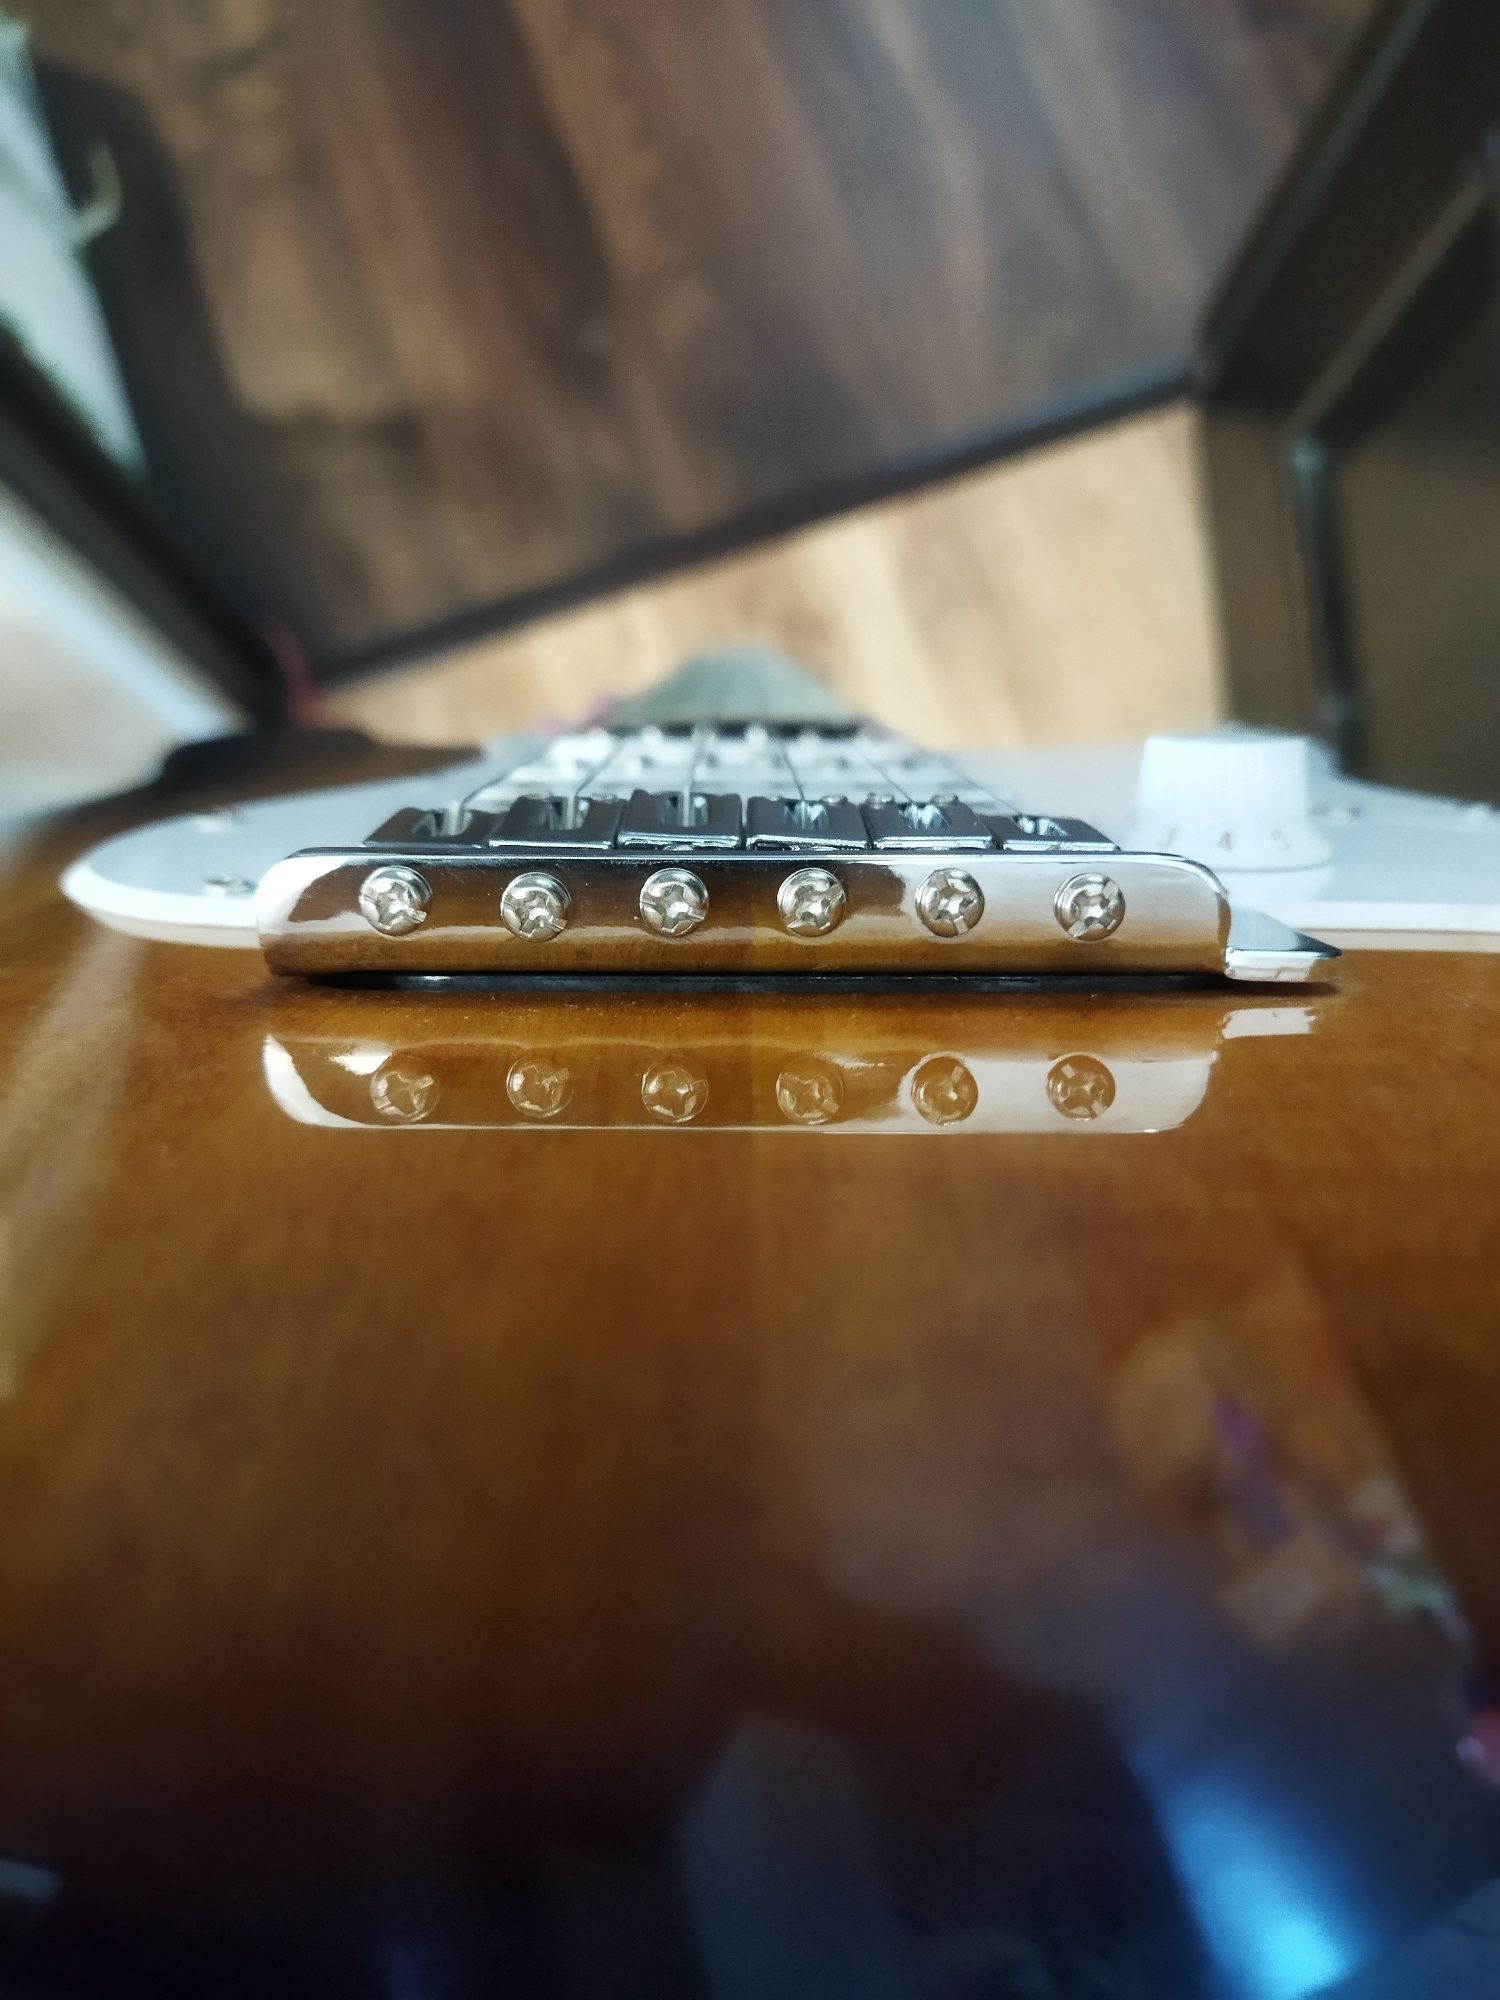 электрогитара Fender squier bullet полный набор для игры